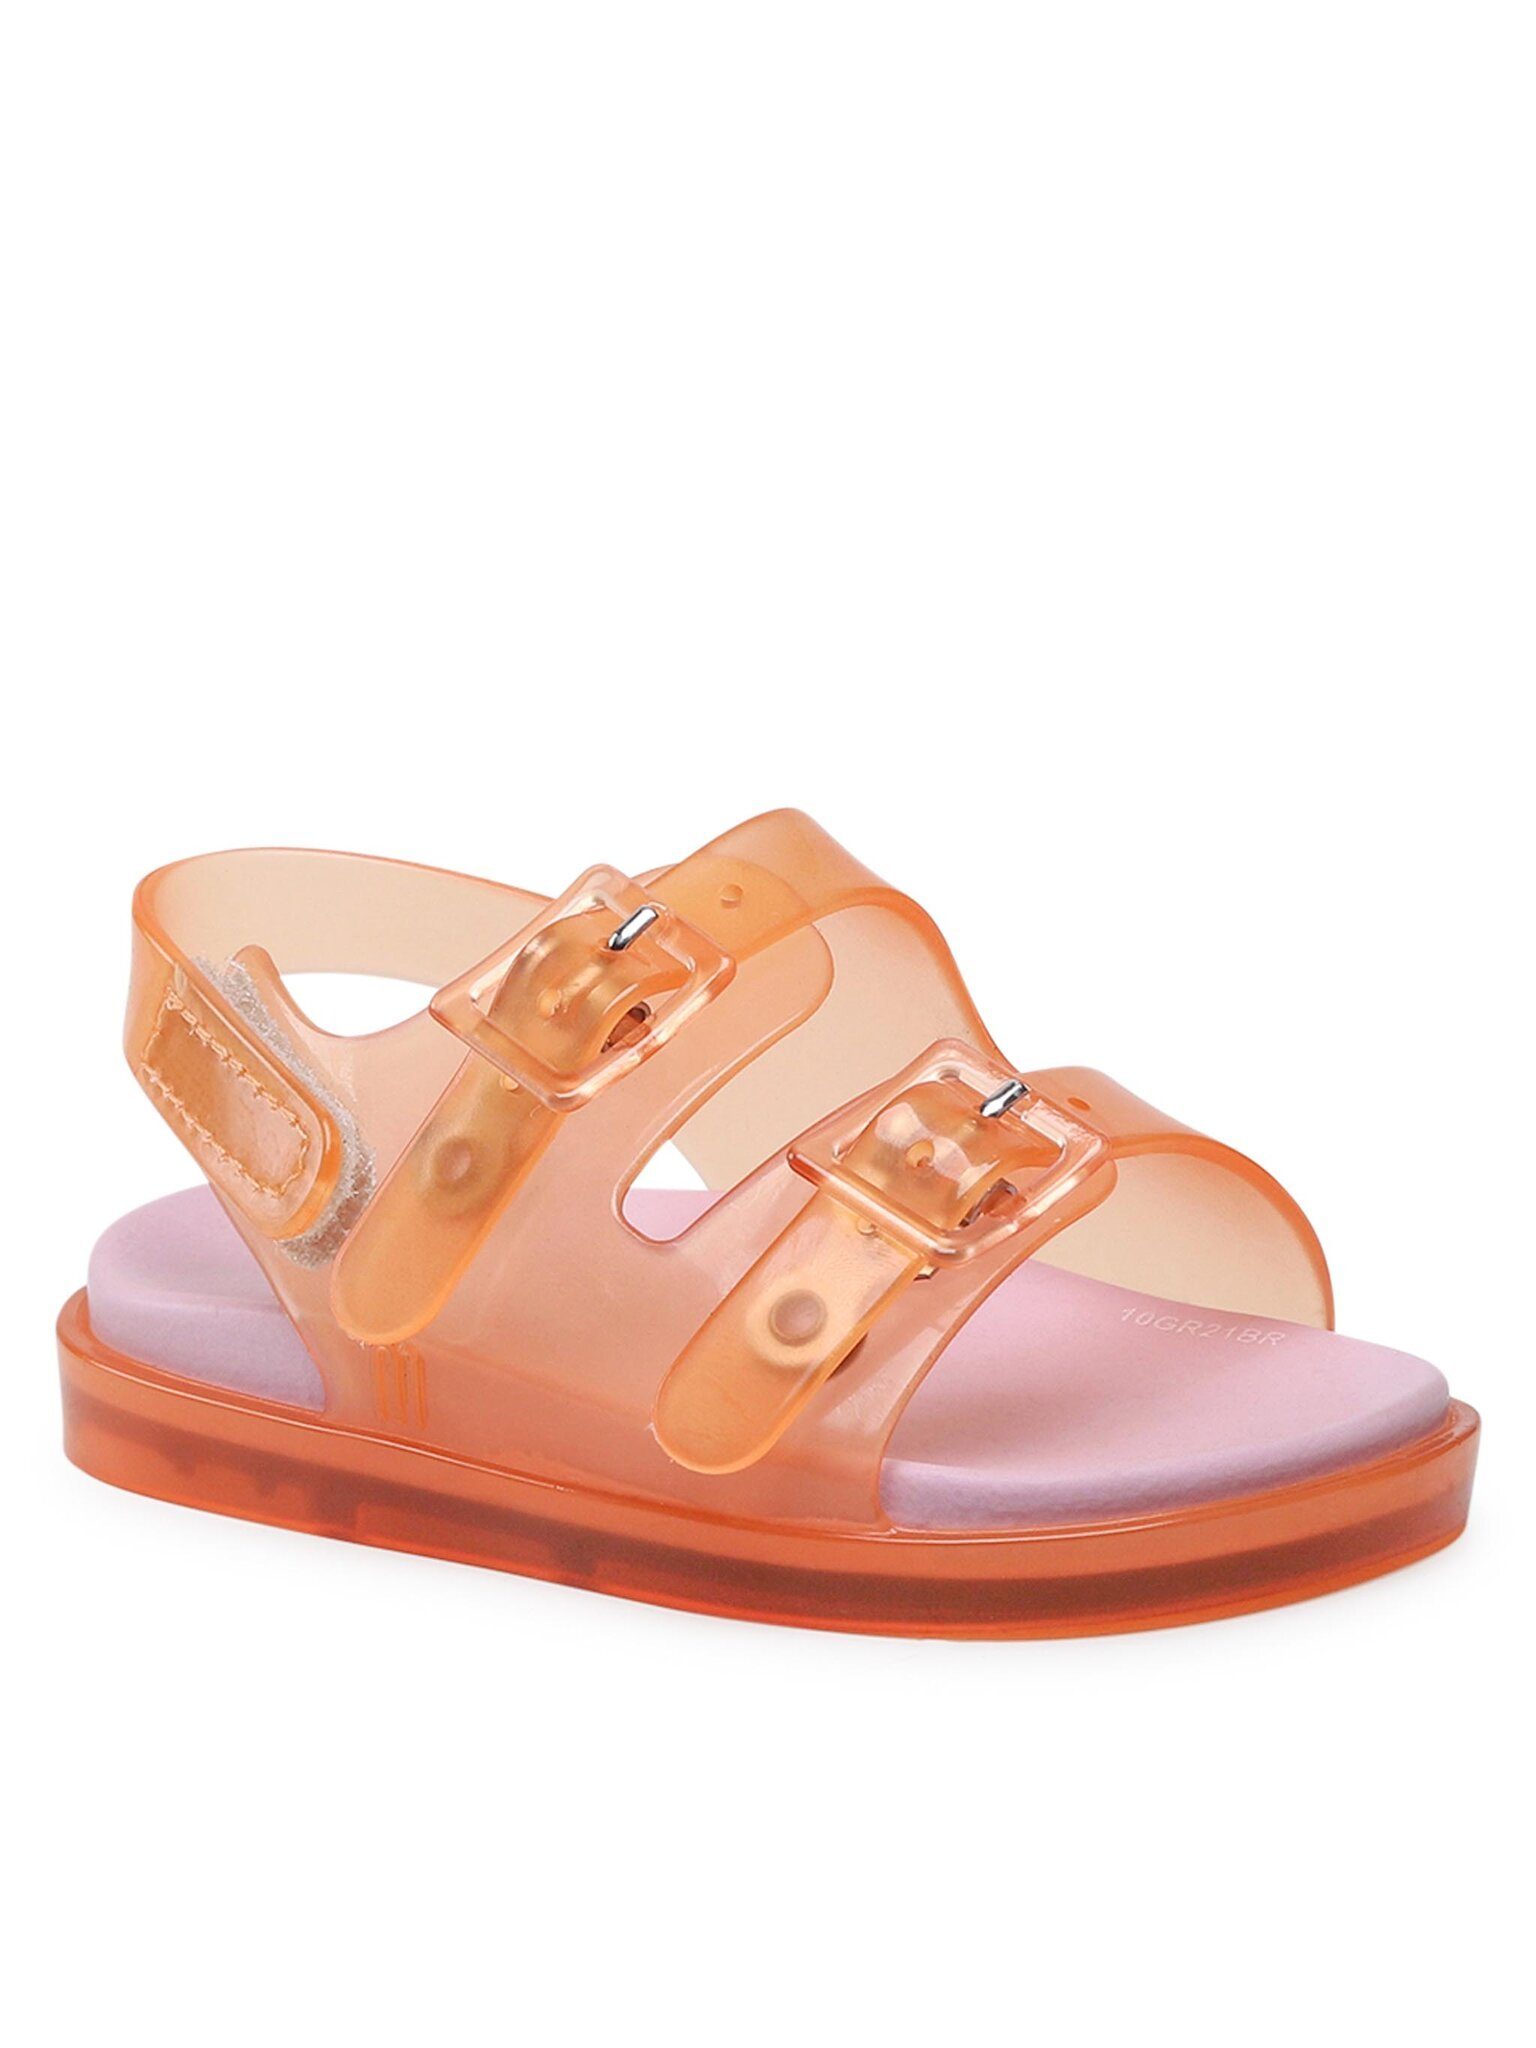 MELISSA Sandalen Mini Melissa Wide Sandal III 33405 Orange/Pink 52657 Sandale